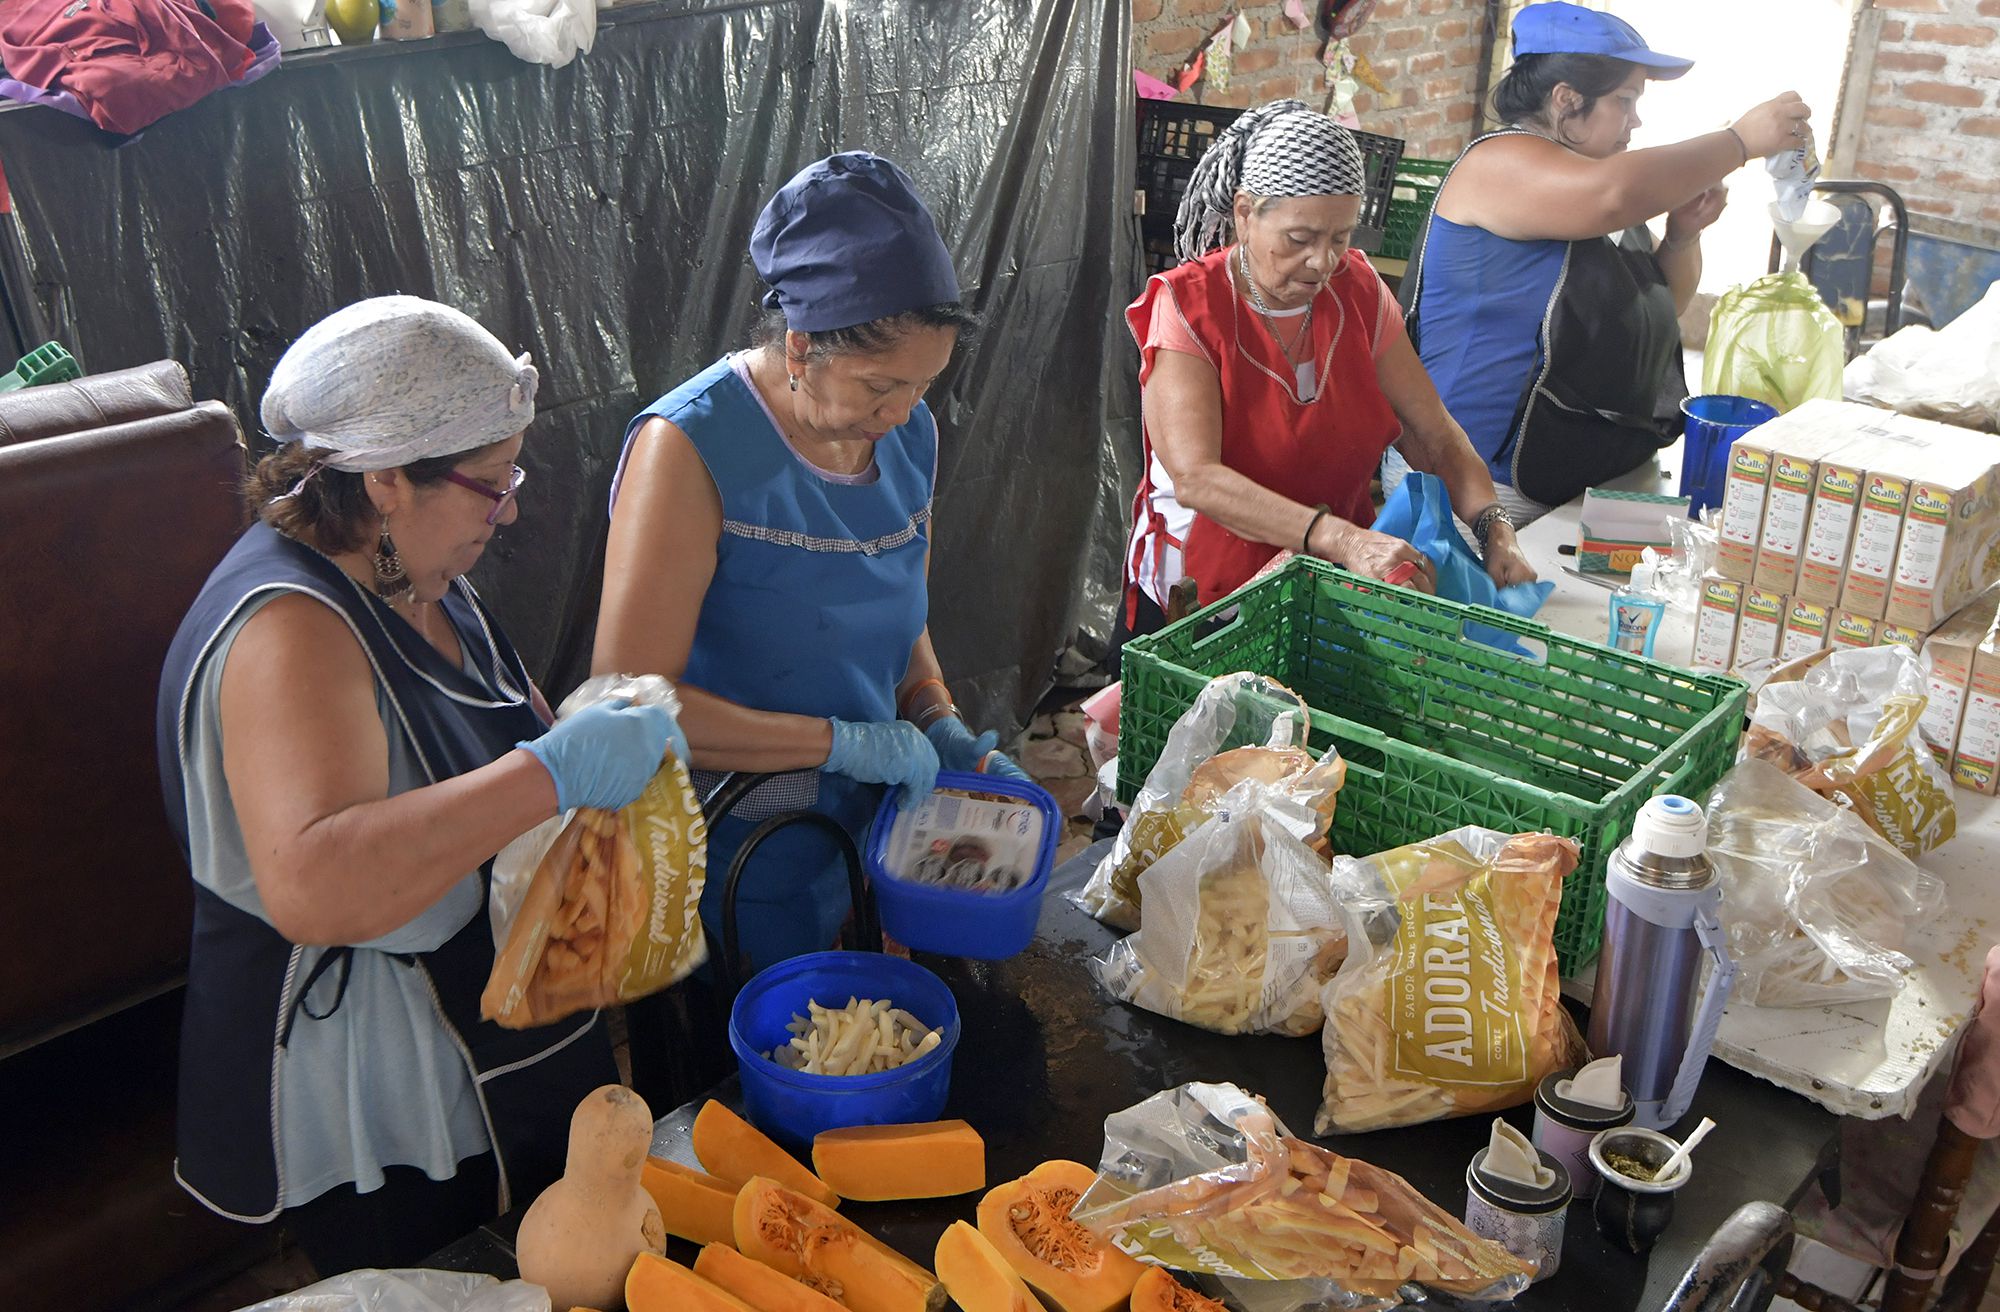 Almuerzo en el comedor comunitario Niños Felices en el Barrio Sol y Sierra de Godoy Cruz
Foto: Orlando Pelichotti